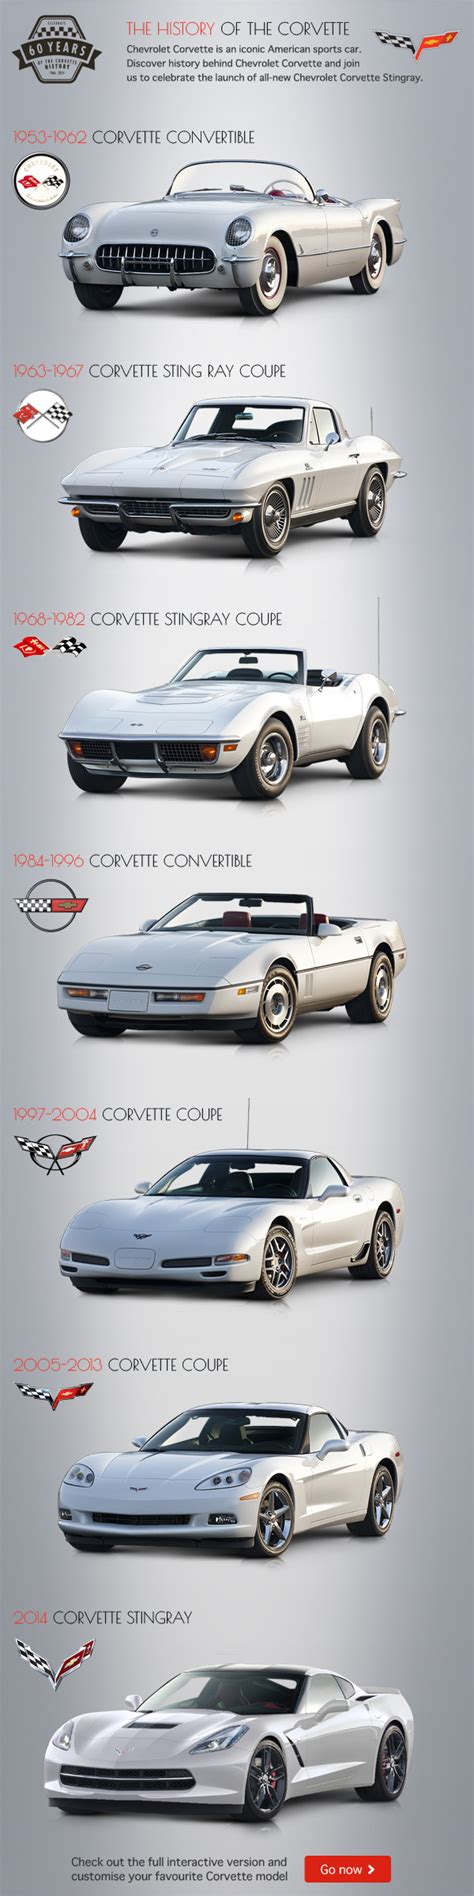 Interactive Timeline Features Seven Generations Of Corvettes Corvette